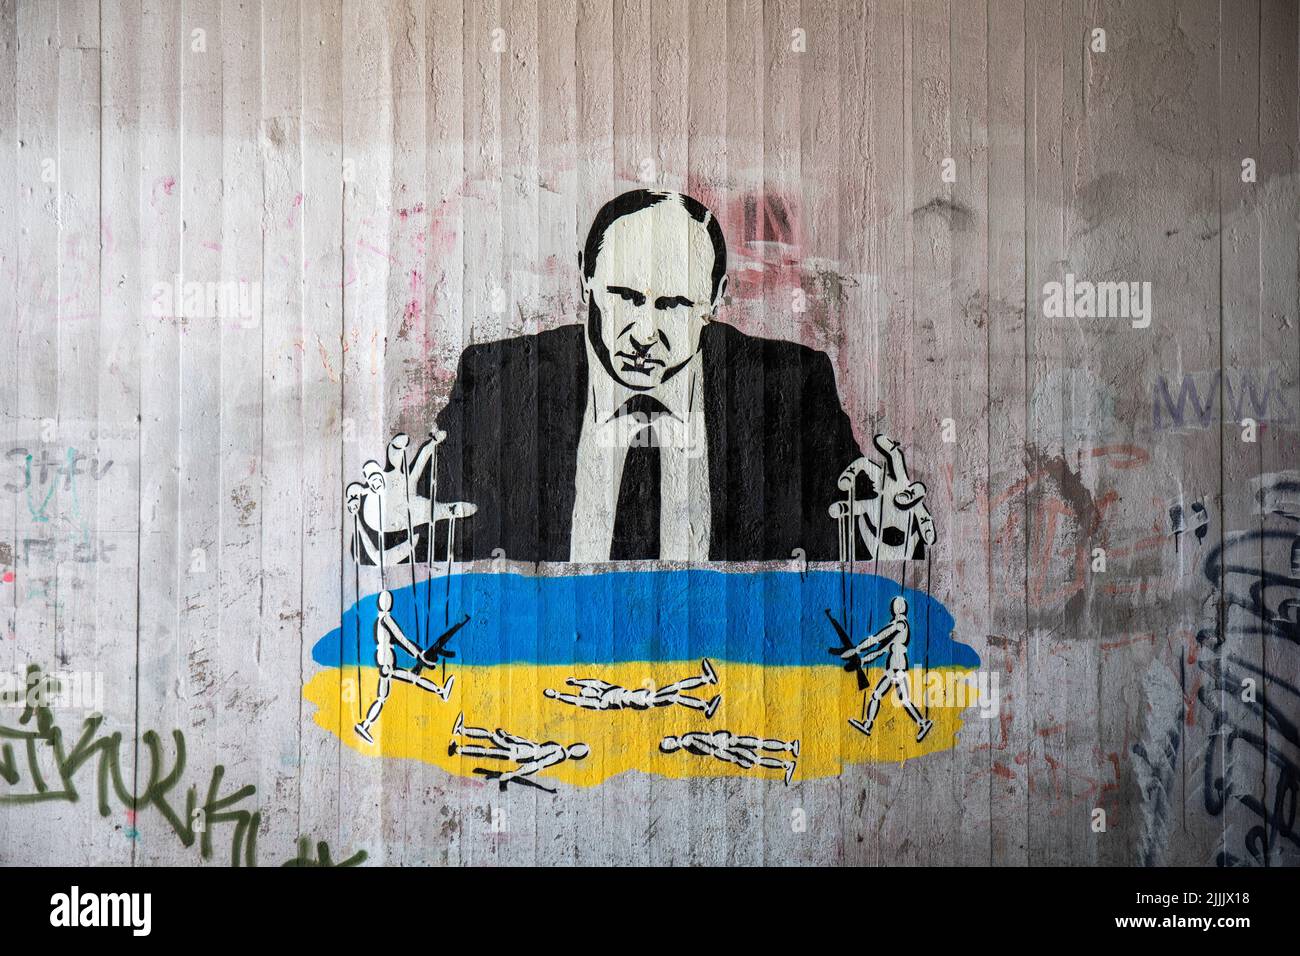 Street art solo per uso editoriale. Graffiti murali o graffiti stencil di Putin come maestro di burattini di Plan B. Helsinki, Finlandia. Foto Stock